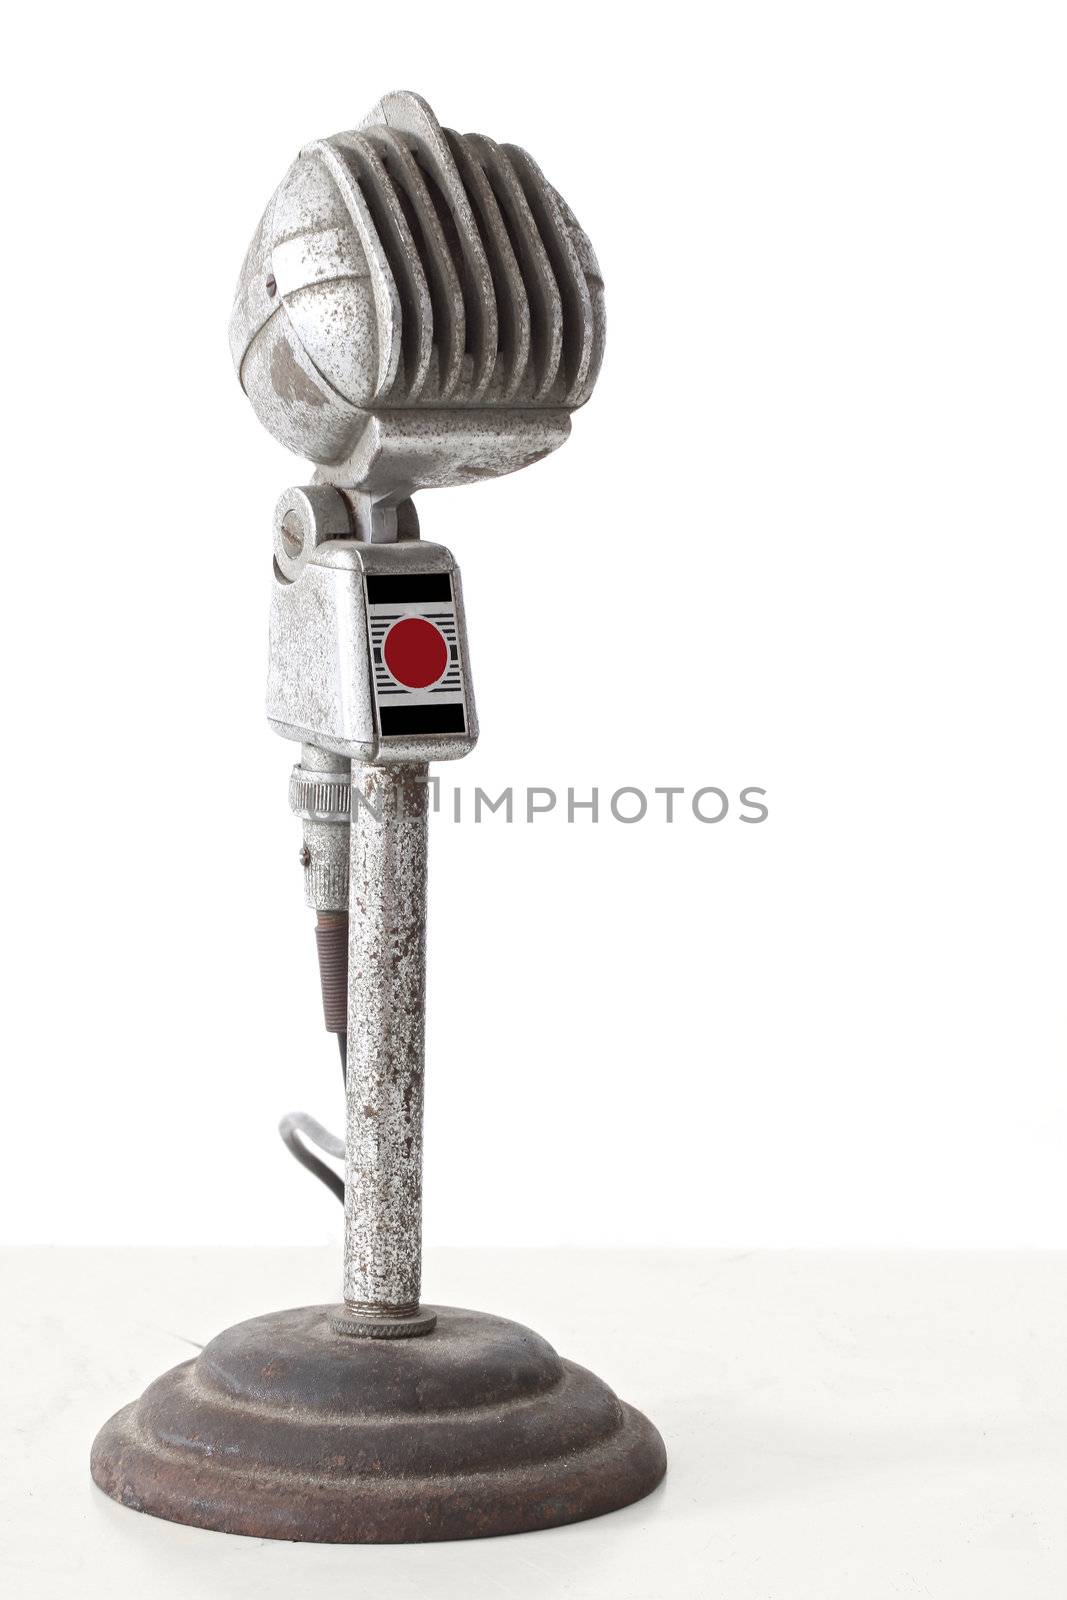 vintage microphone by vichie81